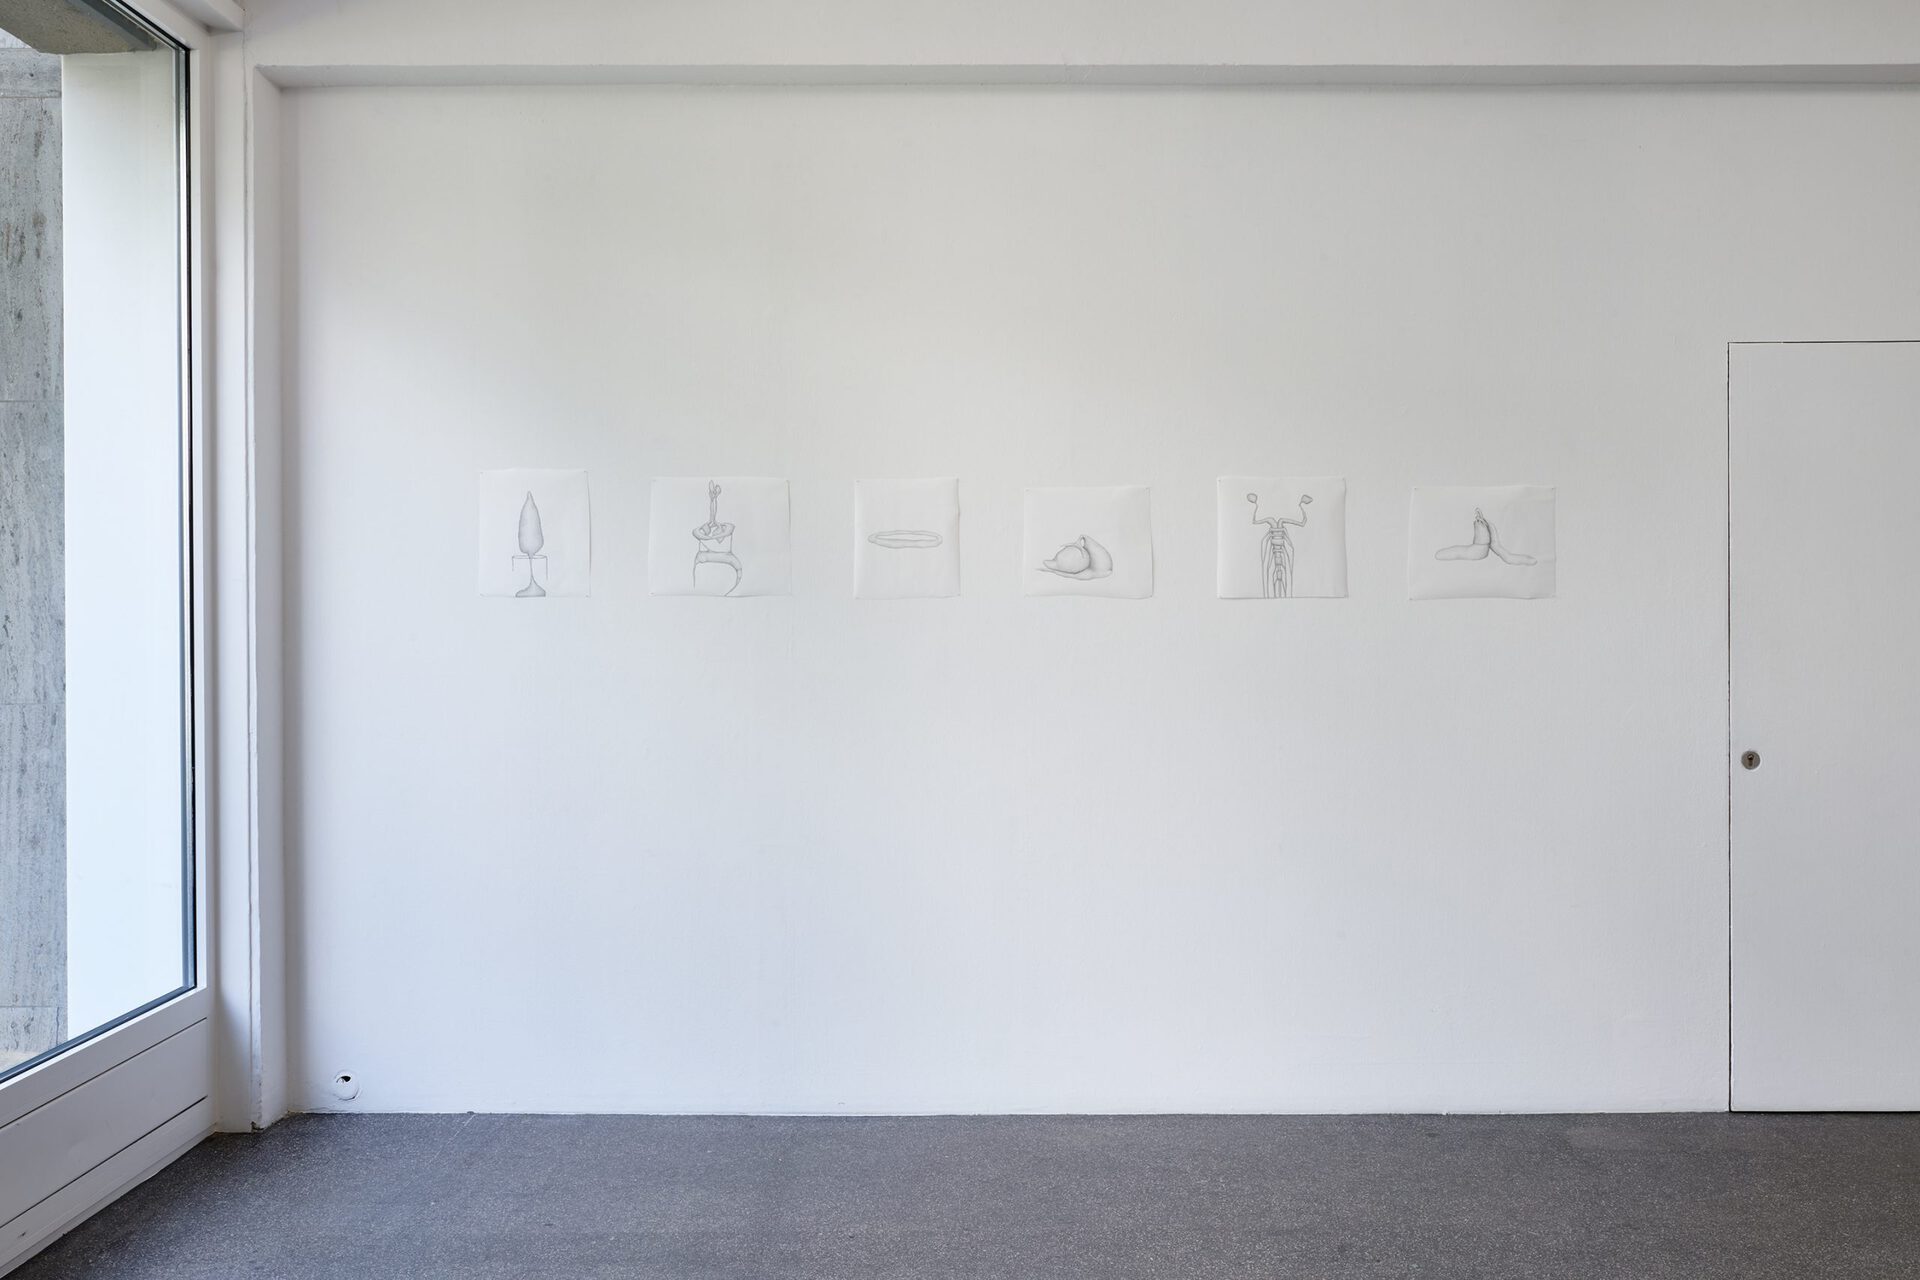 Dunja Herzog, Instead of longing, 2020, Installation view, Kölnischer Kunstverein, 2020, Photo: Mareike Tocha, Courtesy: the artist